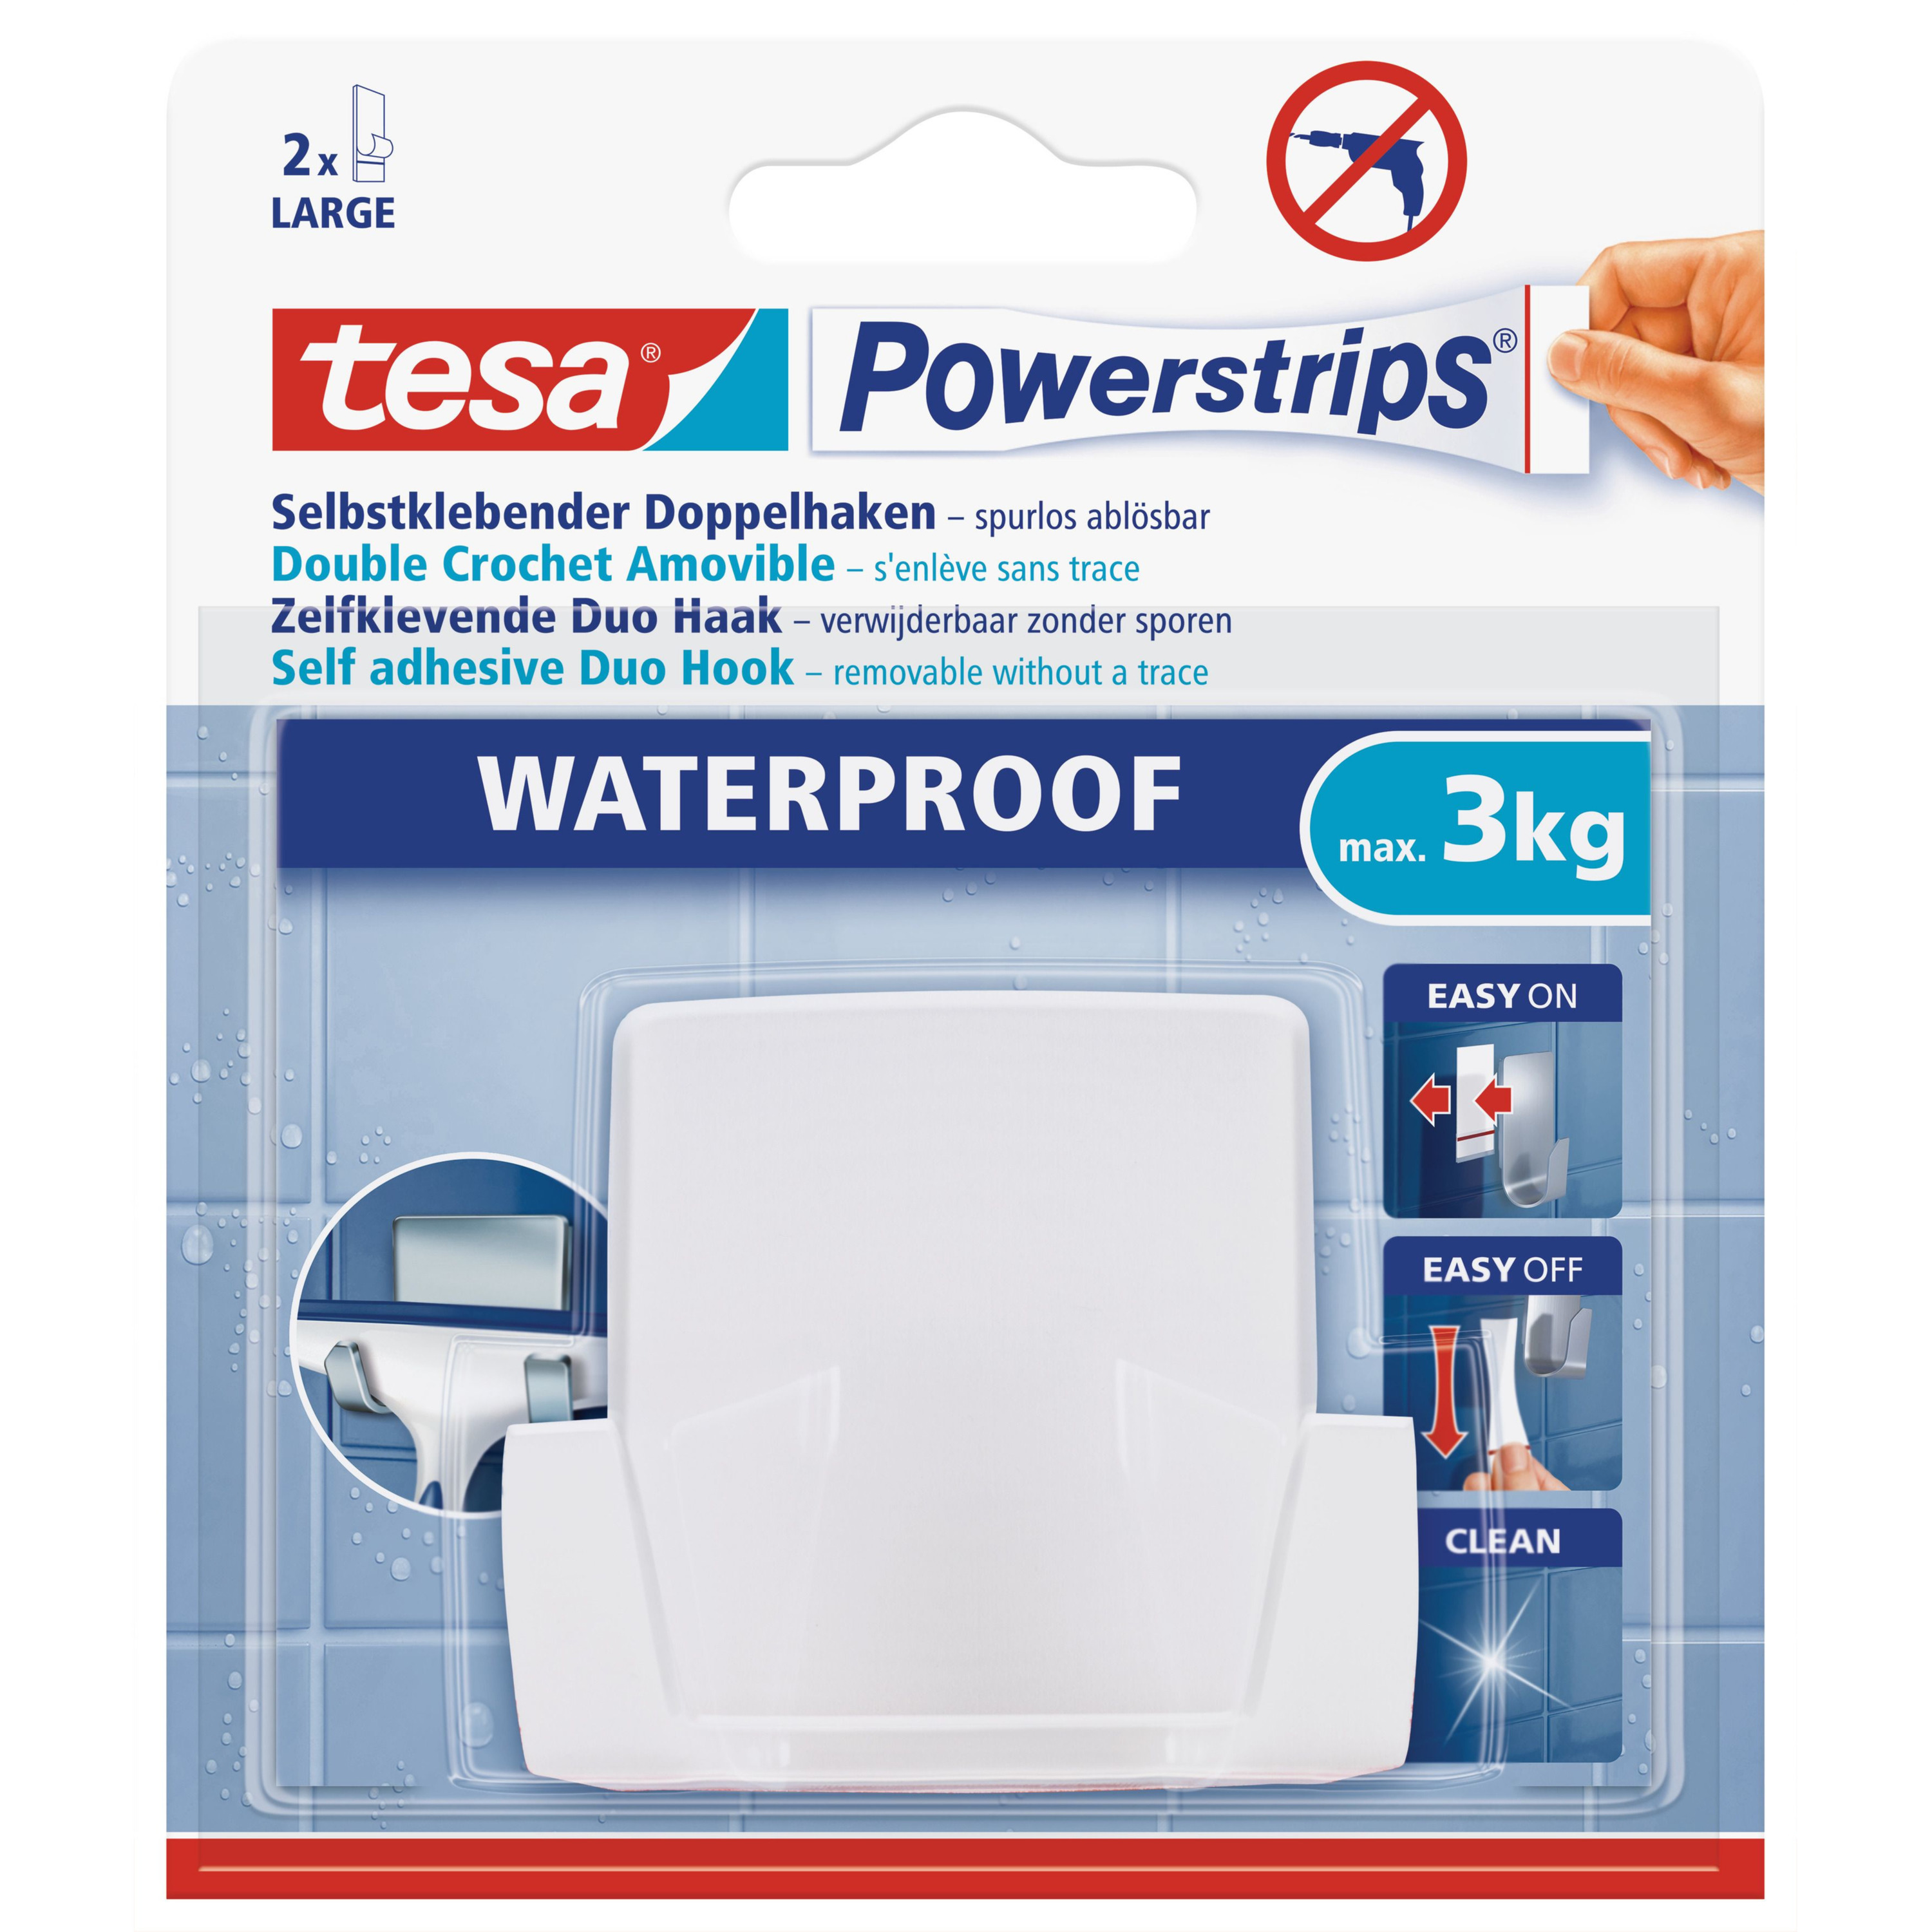 1x Tesa Powerstrips duohaken waterproof klusbenodigdheden